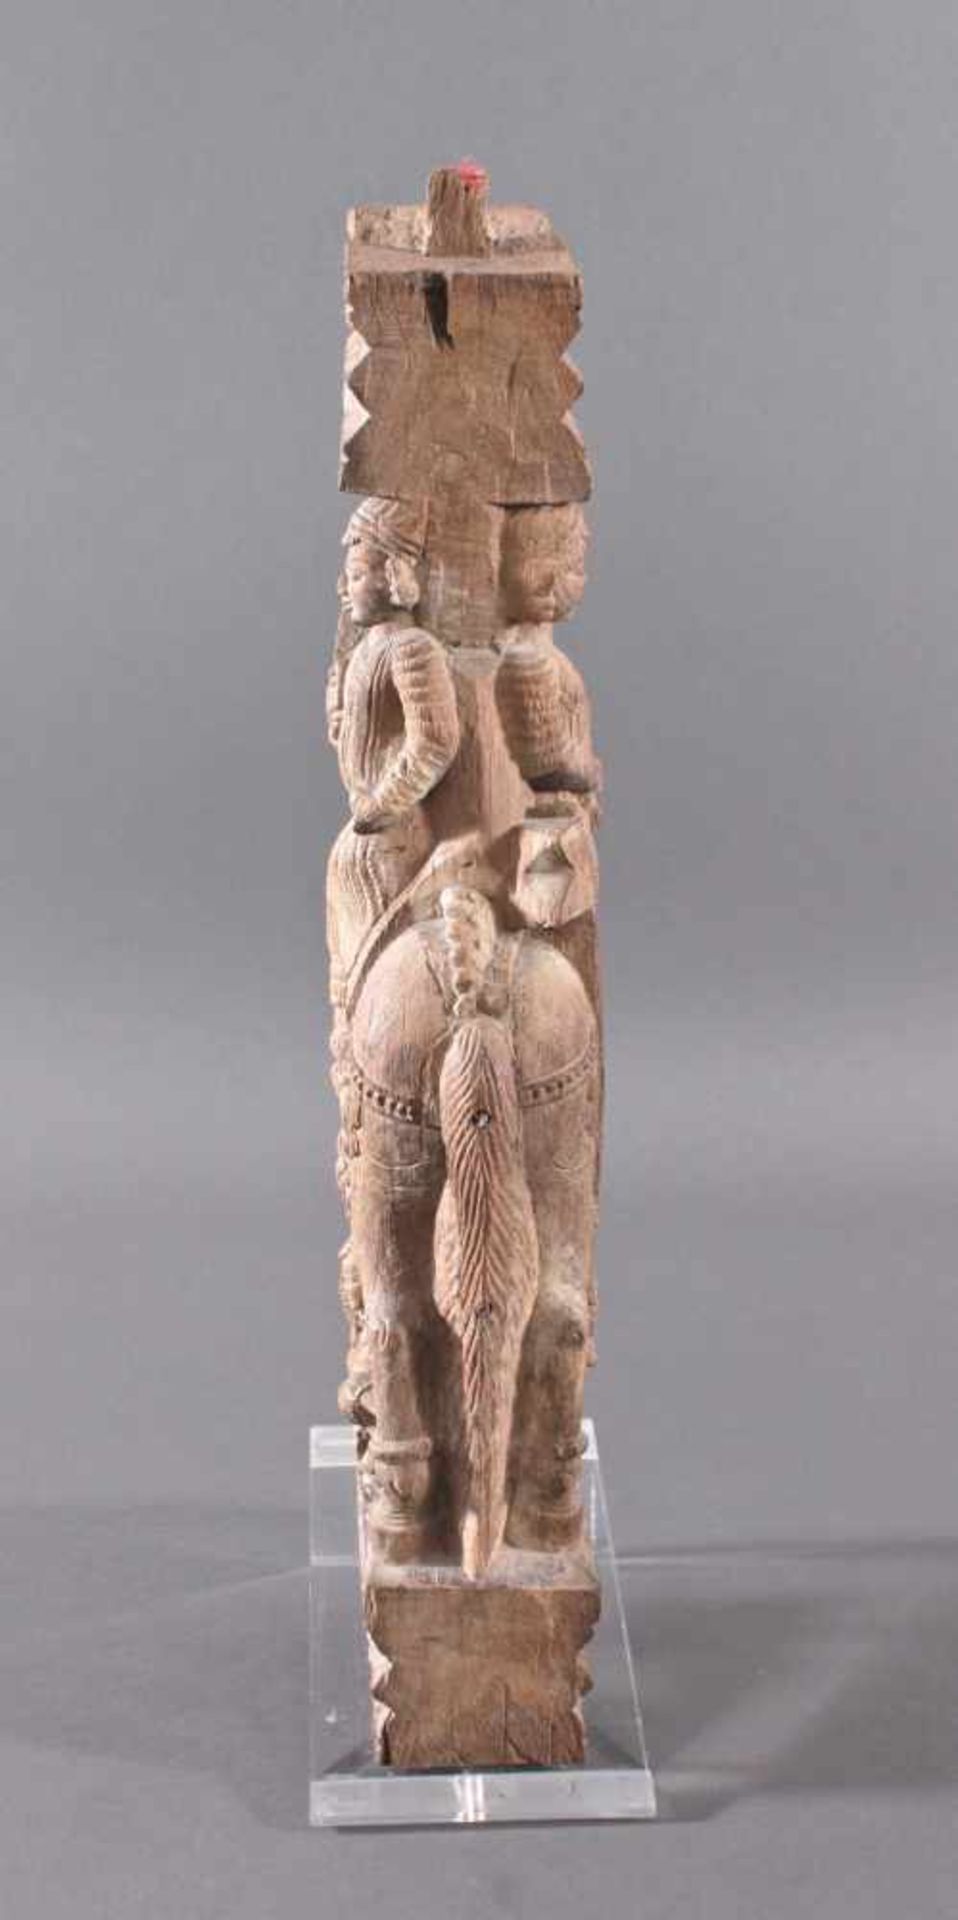 Holzplastik eines Reiters auf einem Pferd, Indien wohl Orissa 15./16. Jh. - Bild 4 aus 13